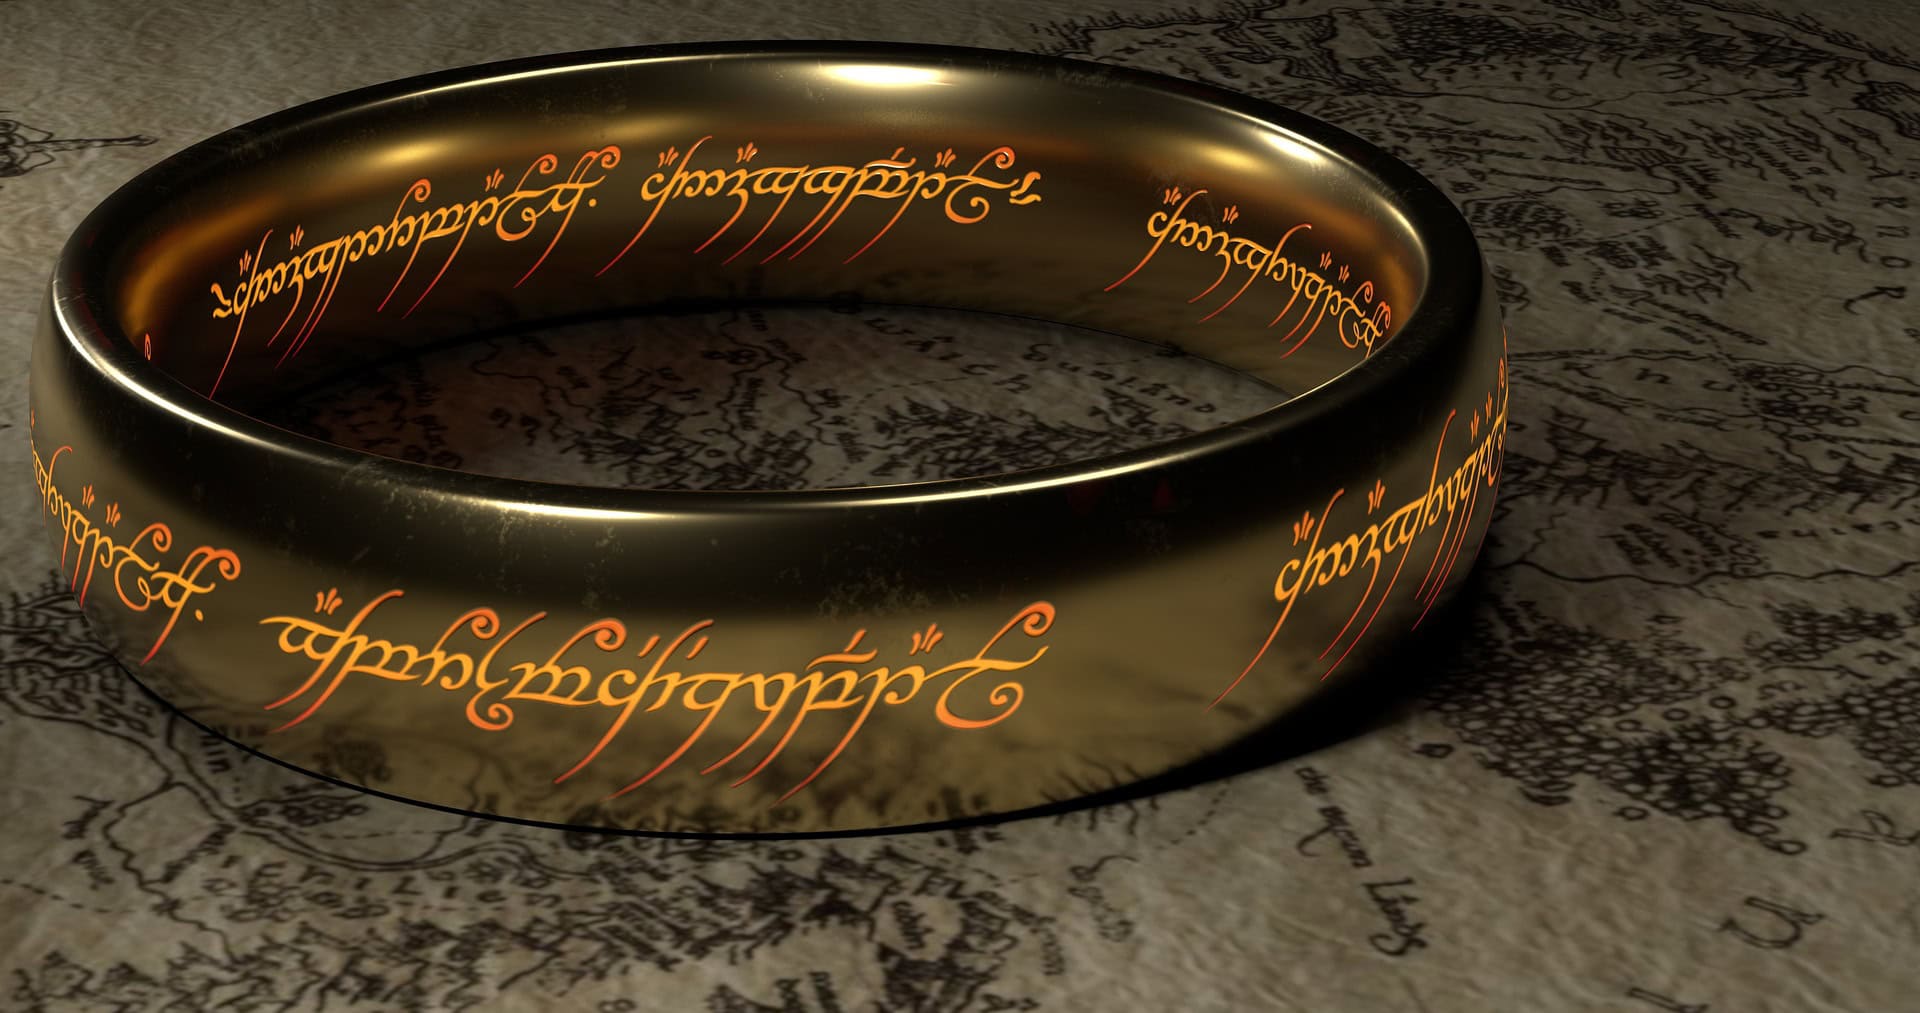 Trauersprüche in Filmen lassen sich auch in großen Filmepen finden - so auch in der Trilogie "Der Herr der Ringe" von J. R. R. Tolkien.